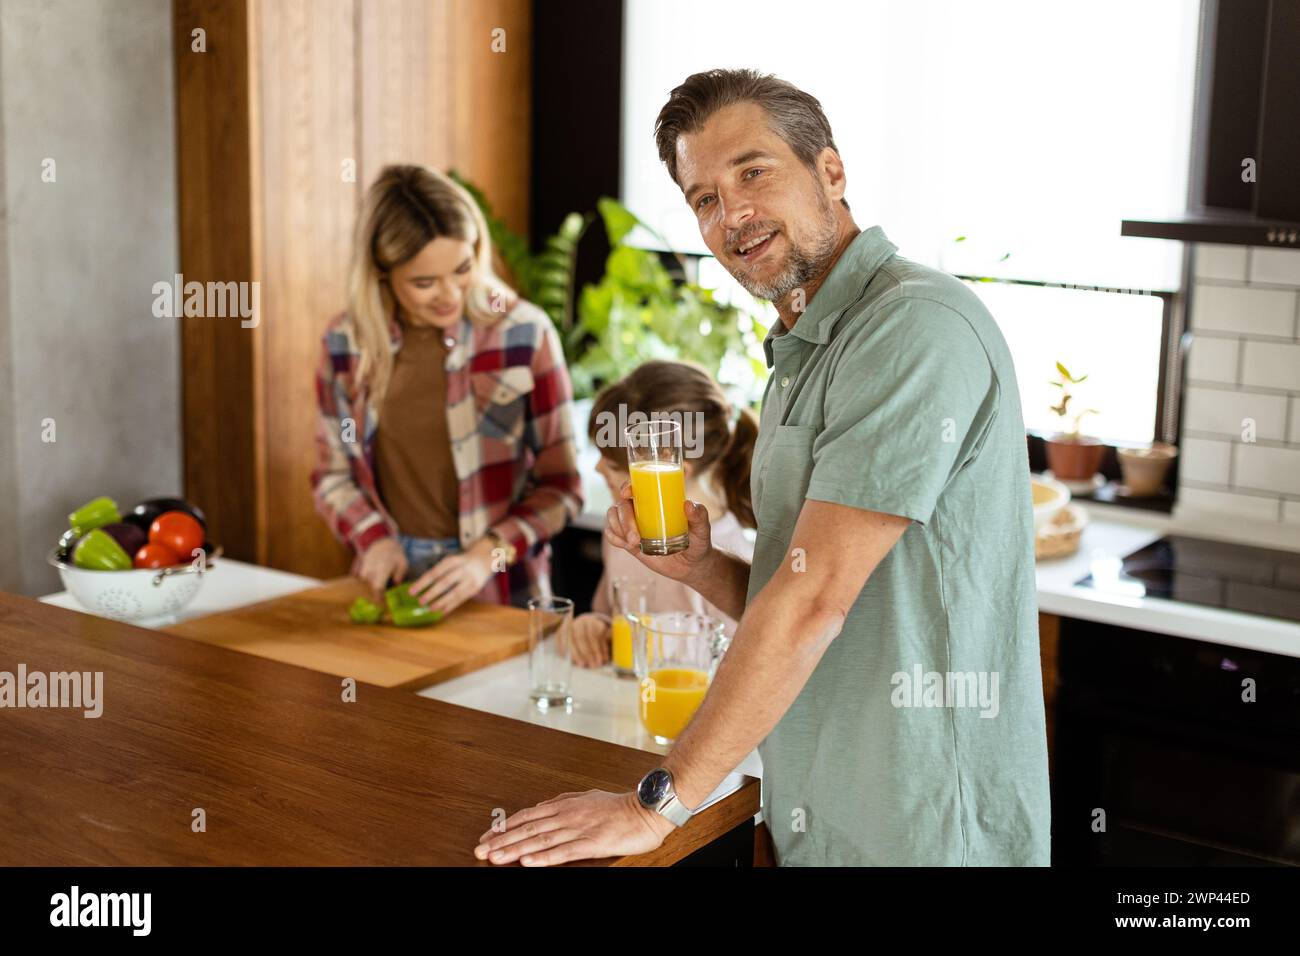 Un homme joyeux avec un verre de jus d'orange tandis qu'une femme et un enfant préparent la nourriture dans une cuisine confortable. Banque D'Images